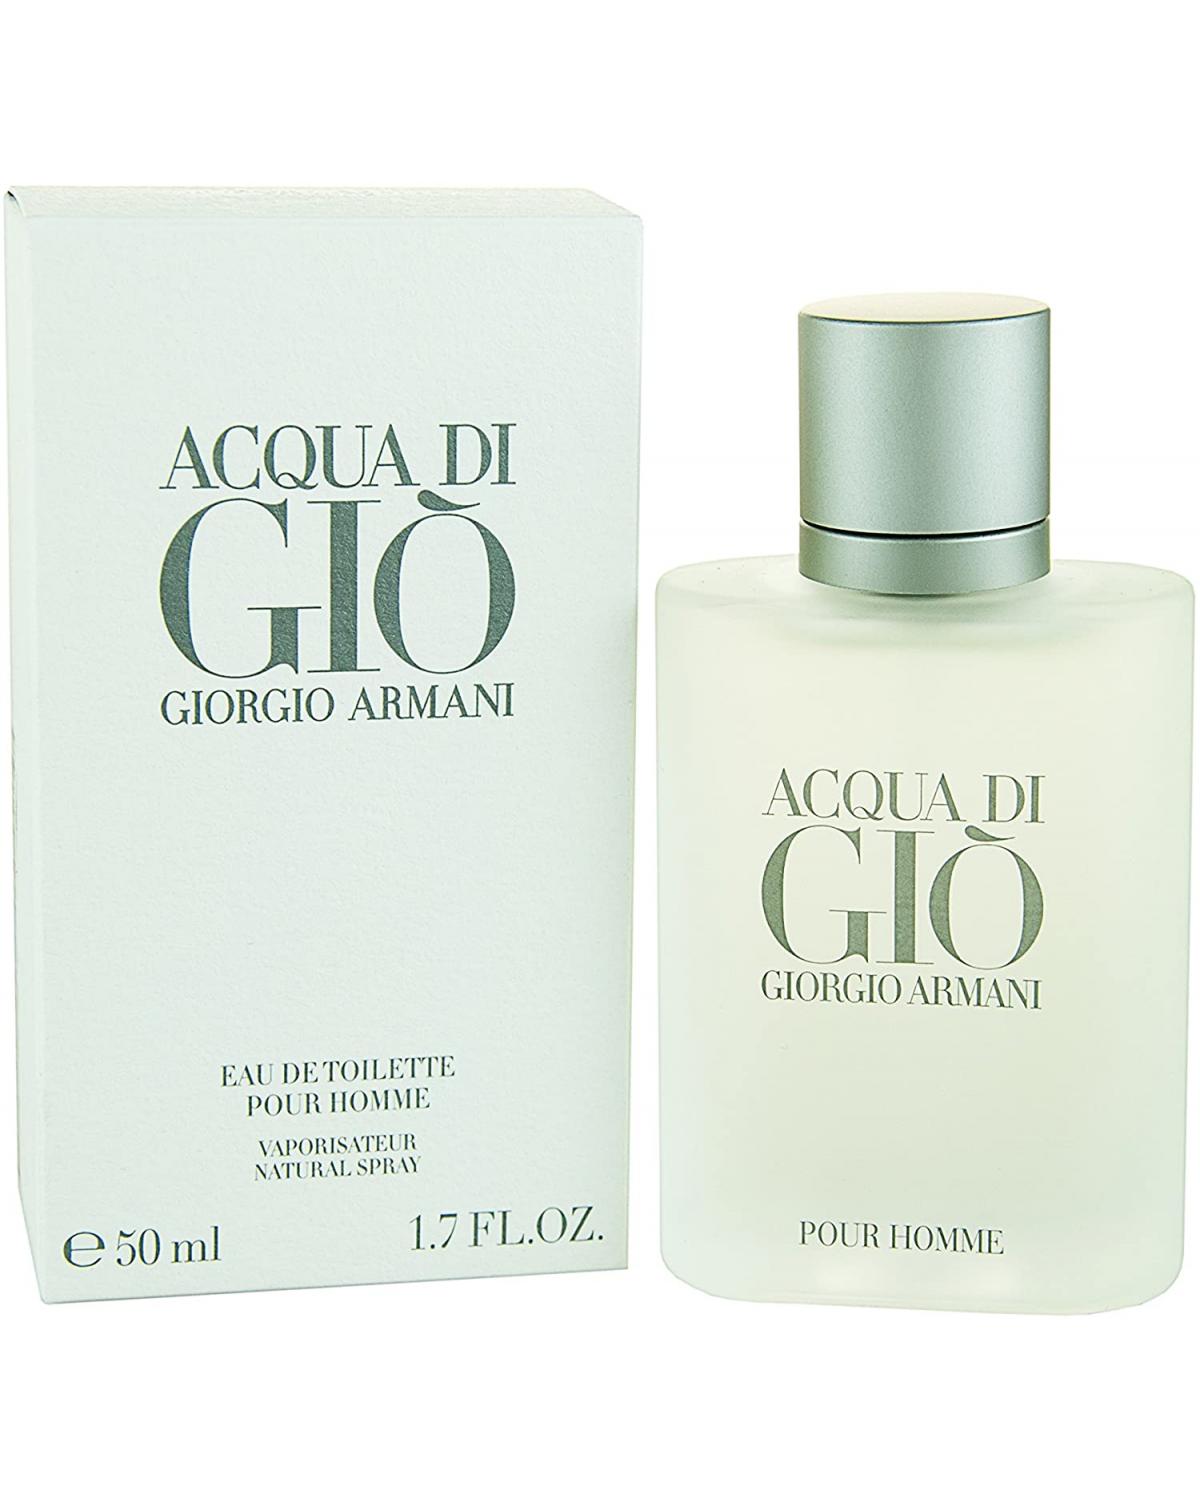 Acqua Di Giò Homme Giorgio Armani - Perfume Masculino - Eau de Toilette - 50ml